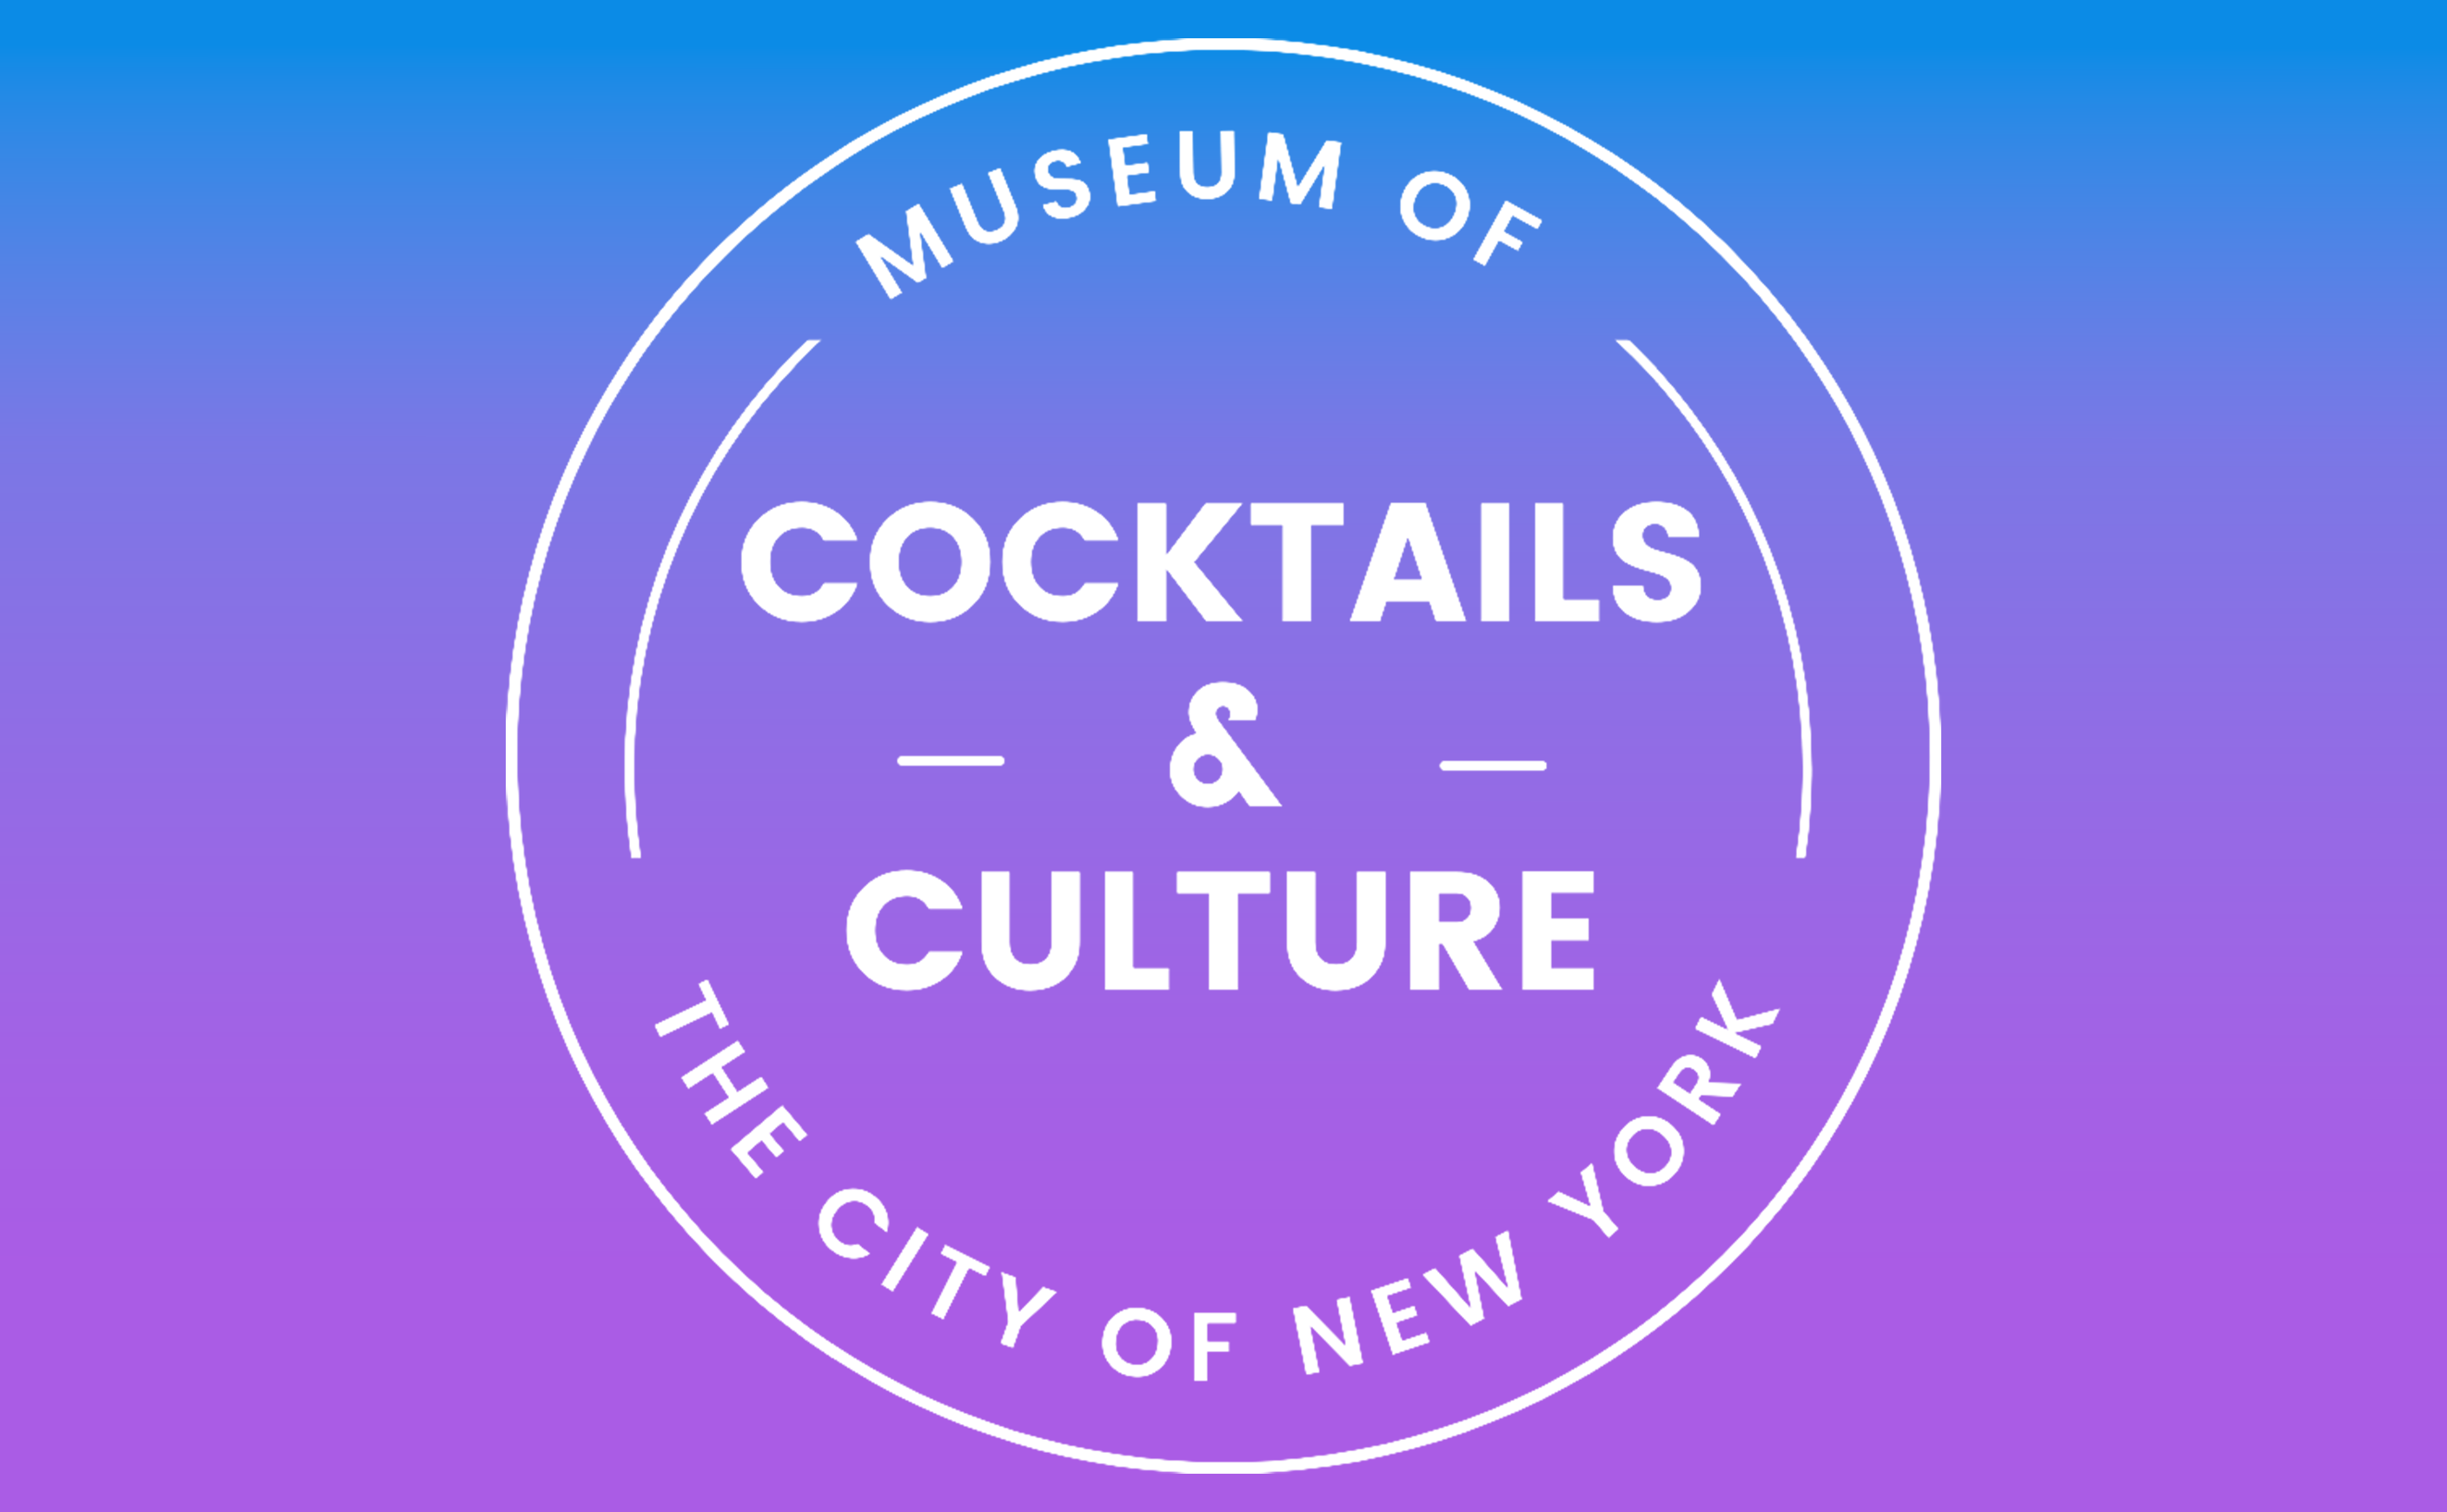 Les mots "Cocktails & Culture" dans un cercle blanc sur fond bleu et violet.